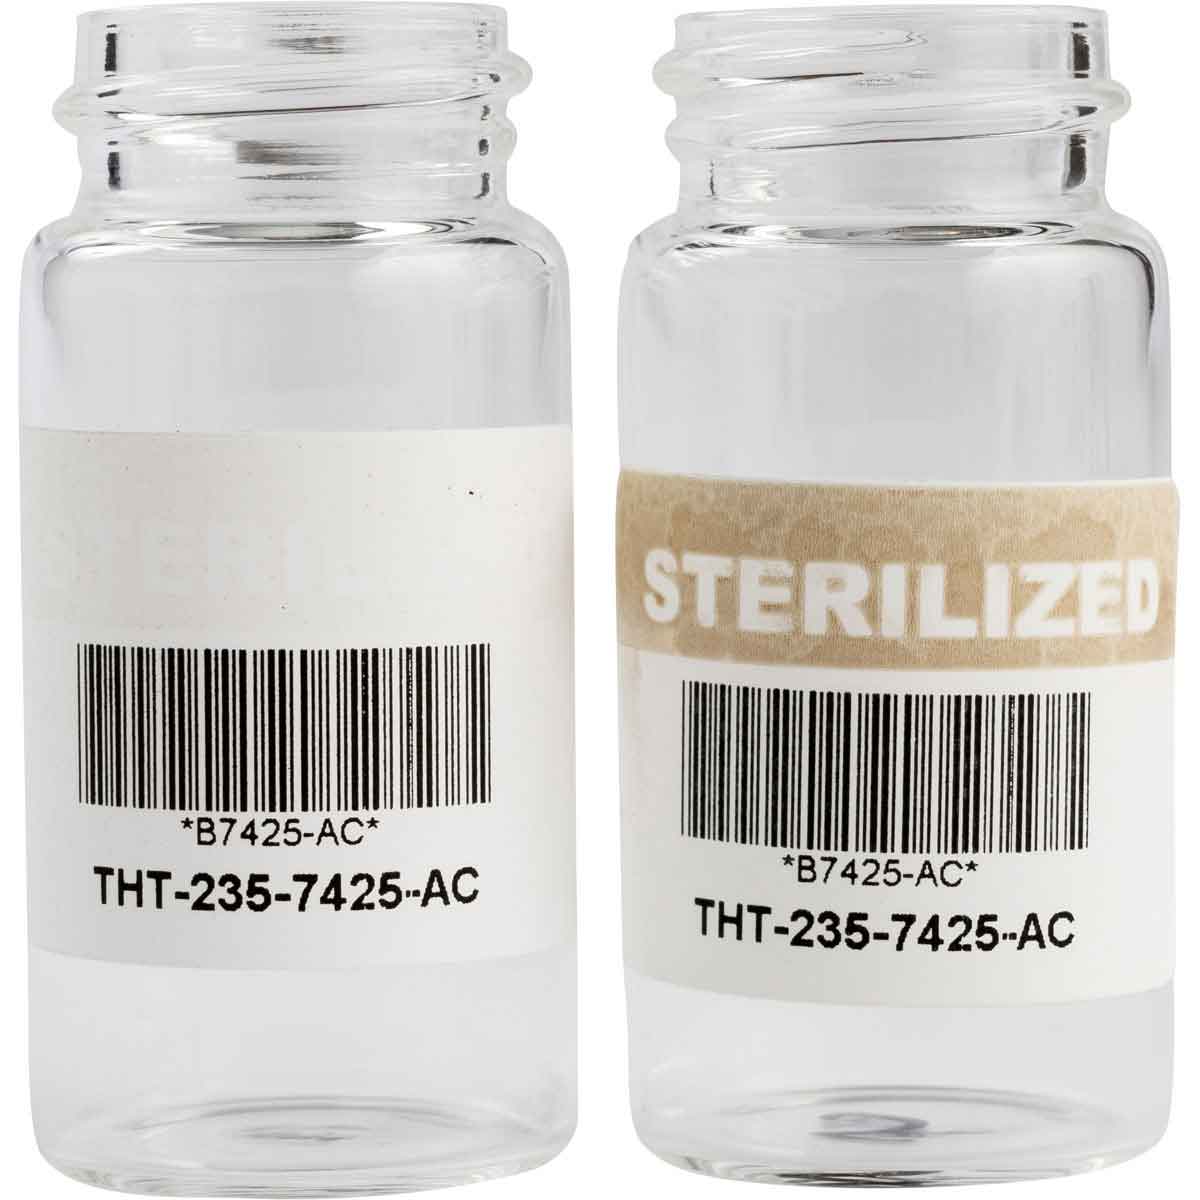 BRADY Etiketten mit Angabe zur Sterilisation für den Thermotransferdruck THT-235-7425-2-AC 149272